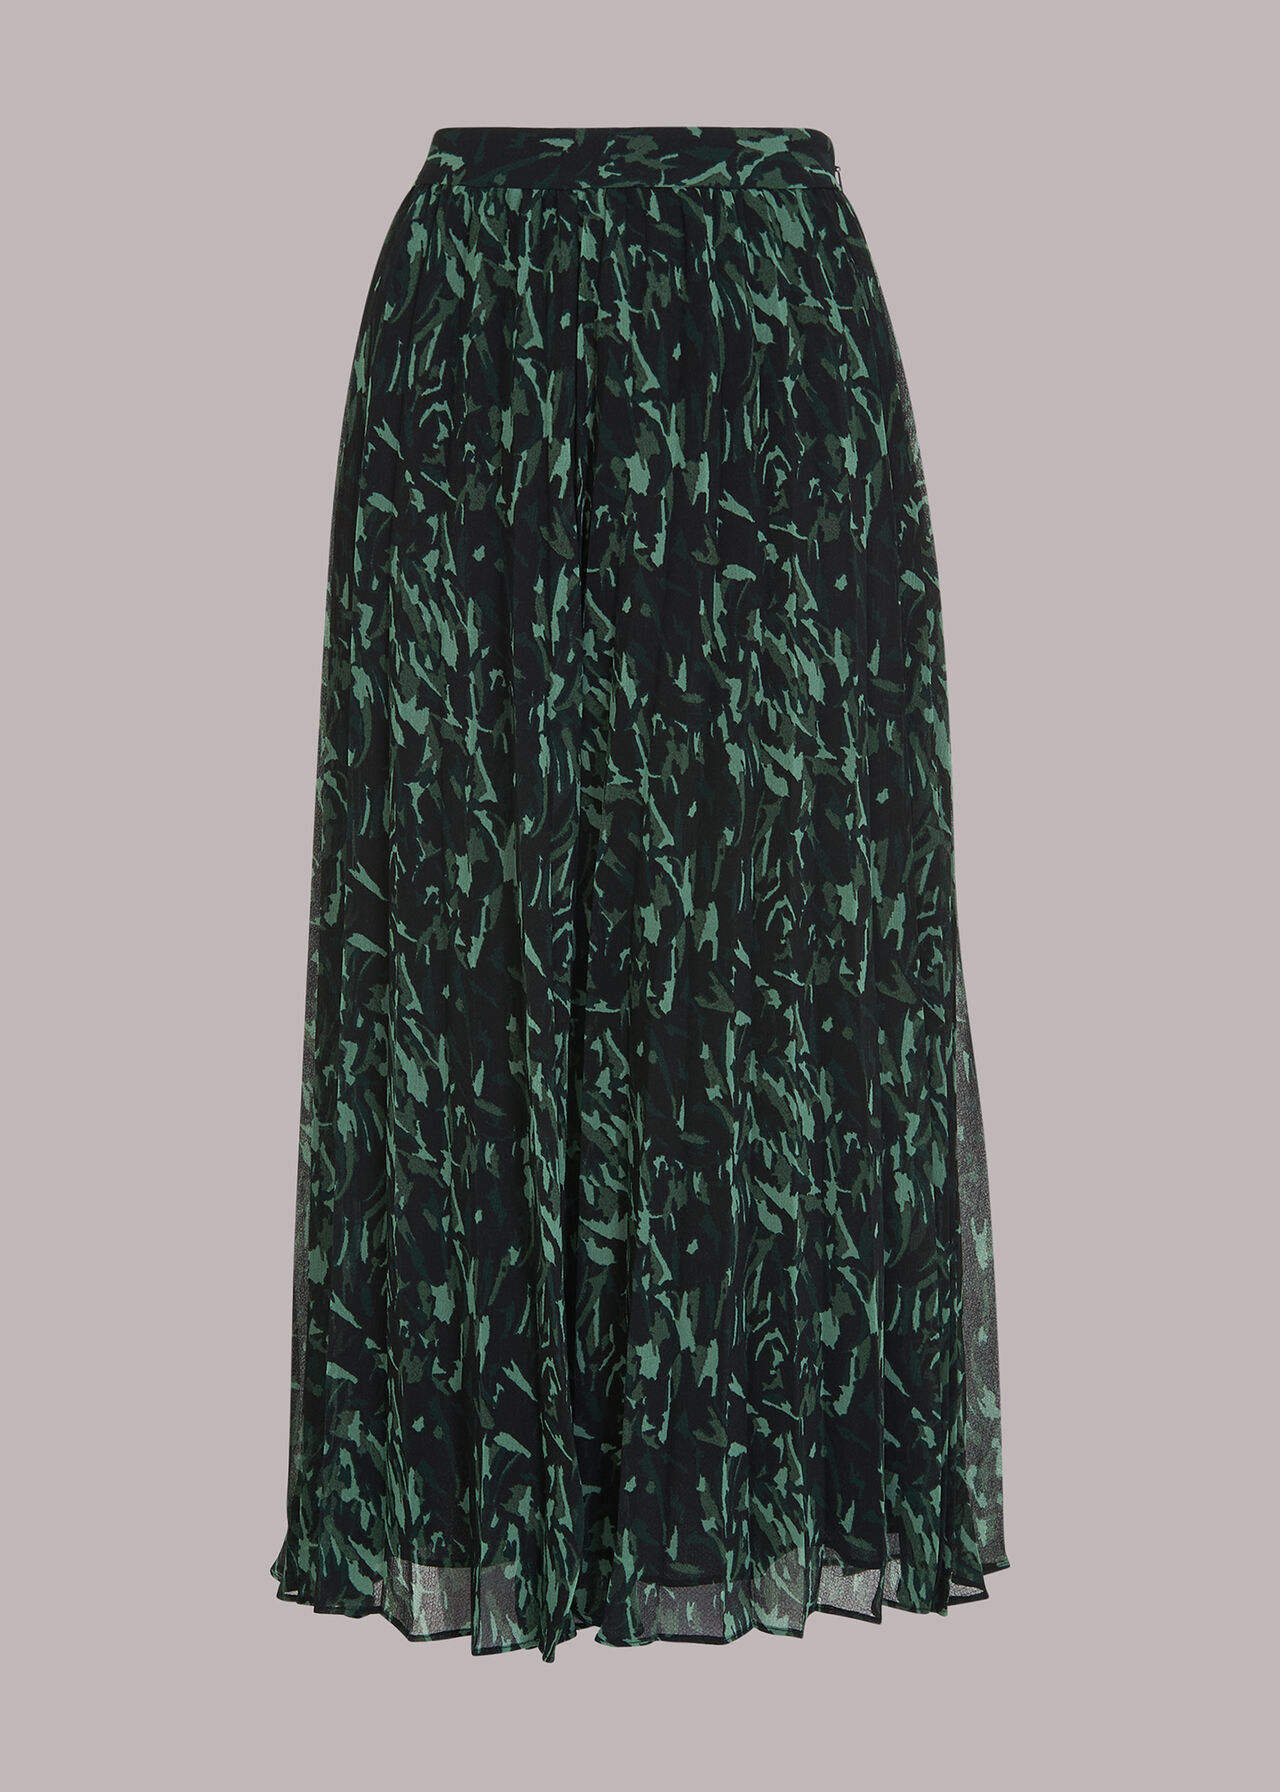 Abstract Brushstroke Skirt